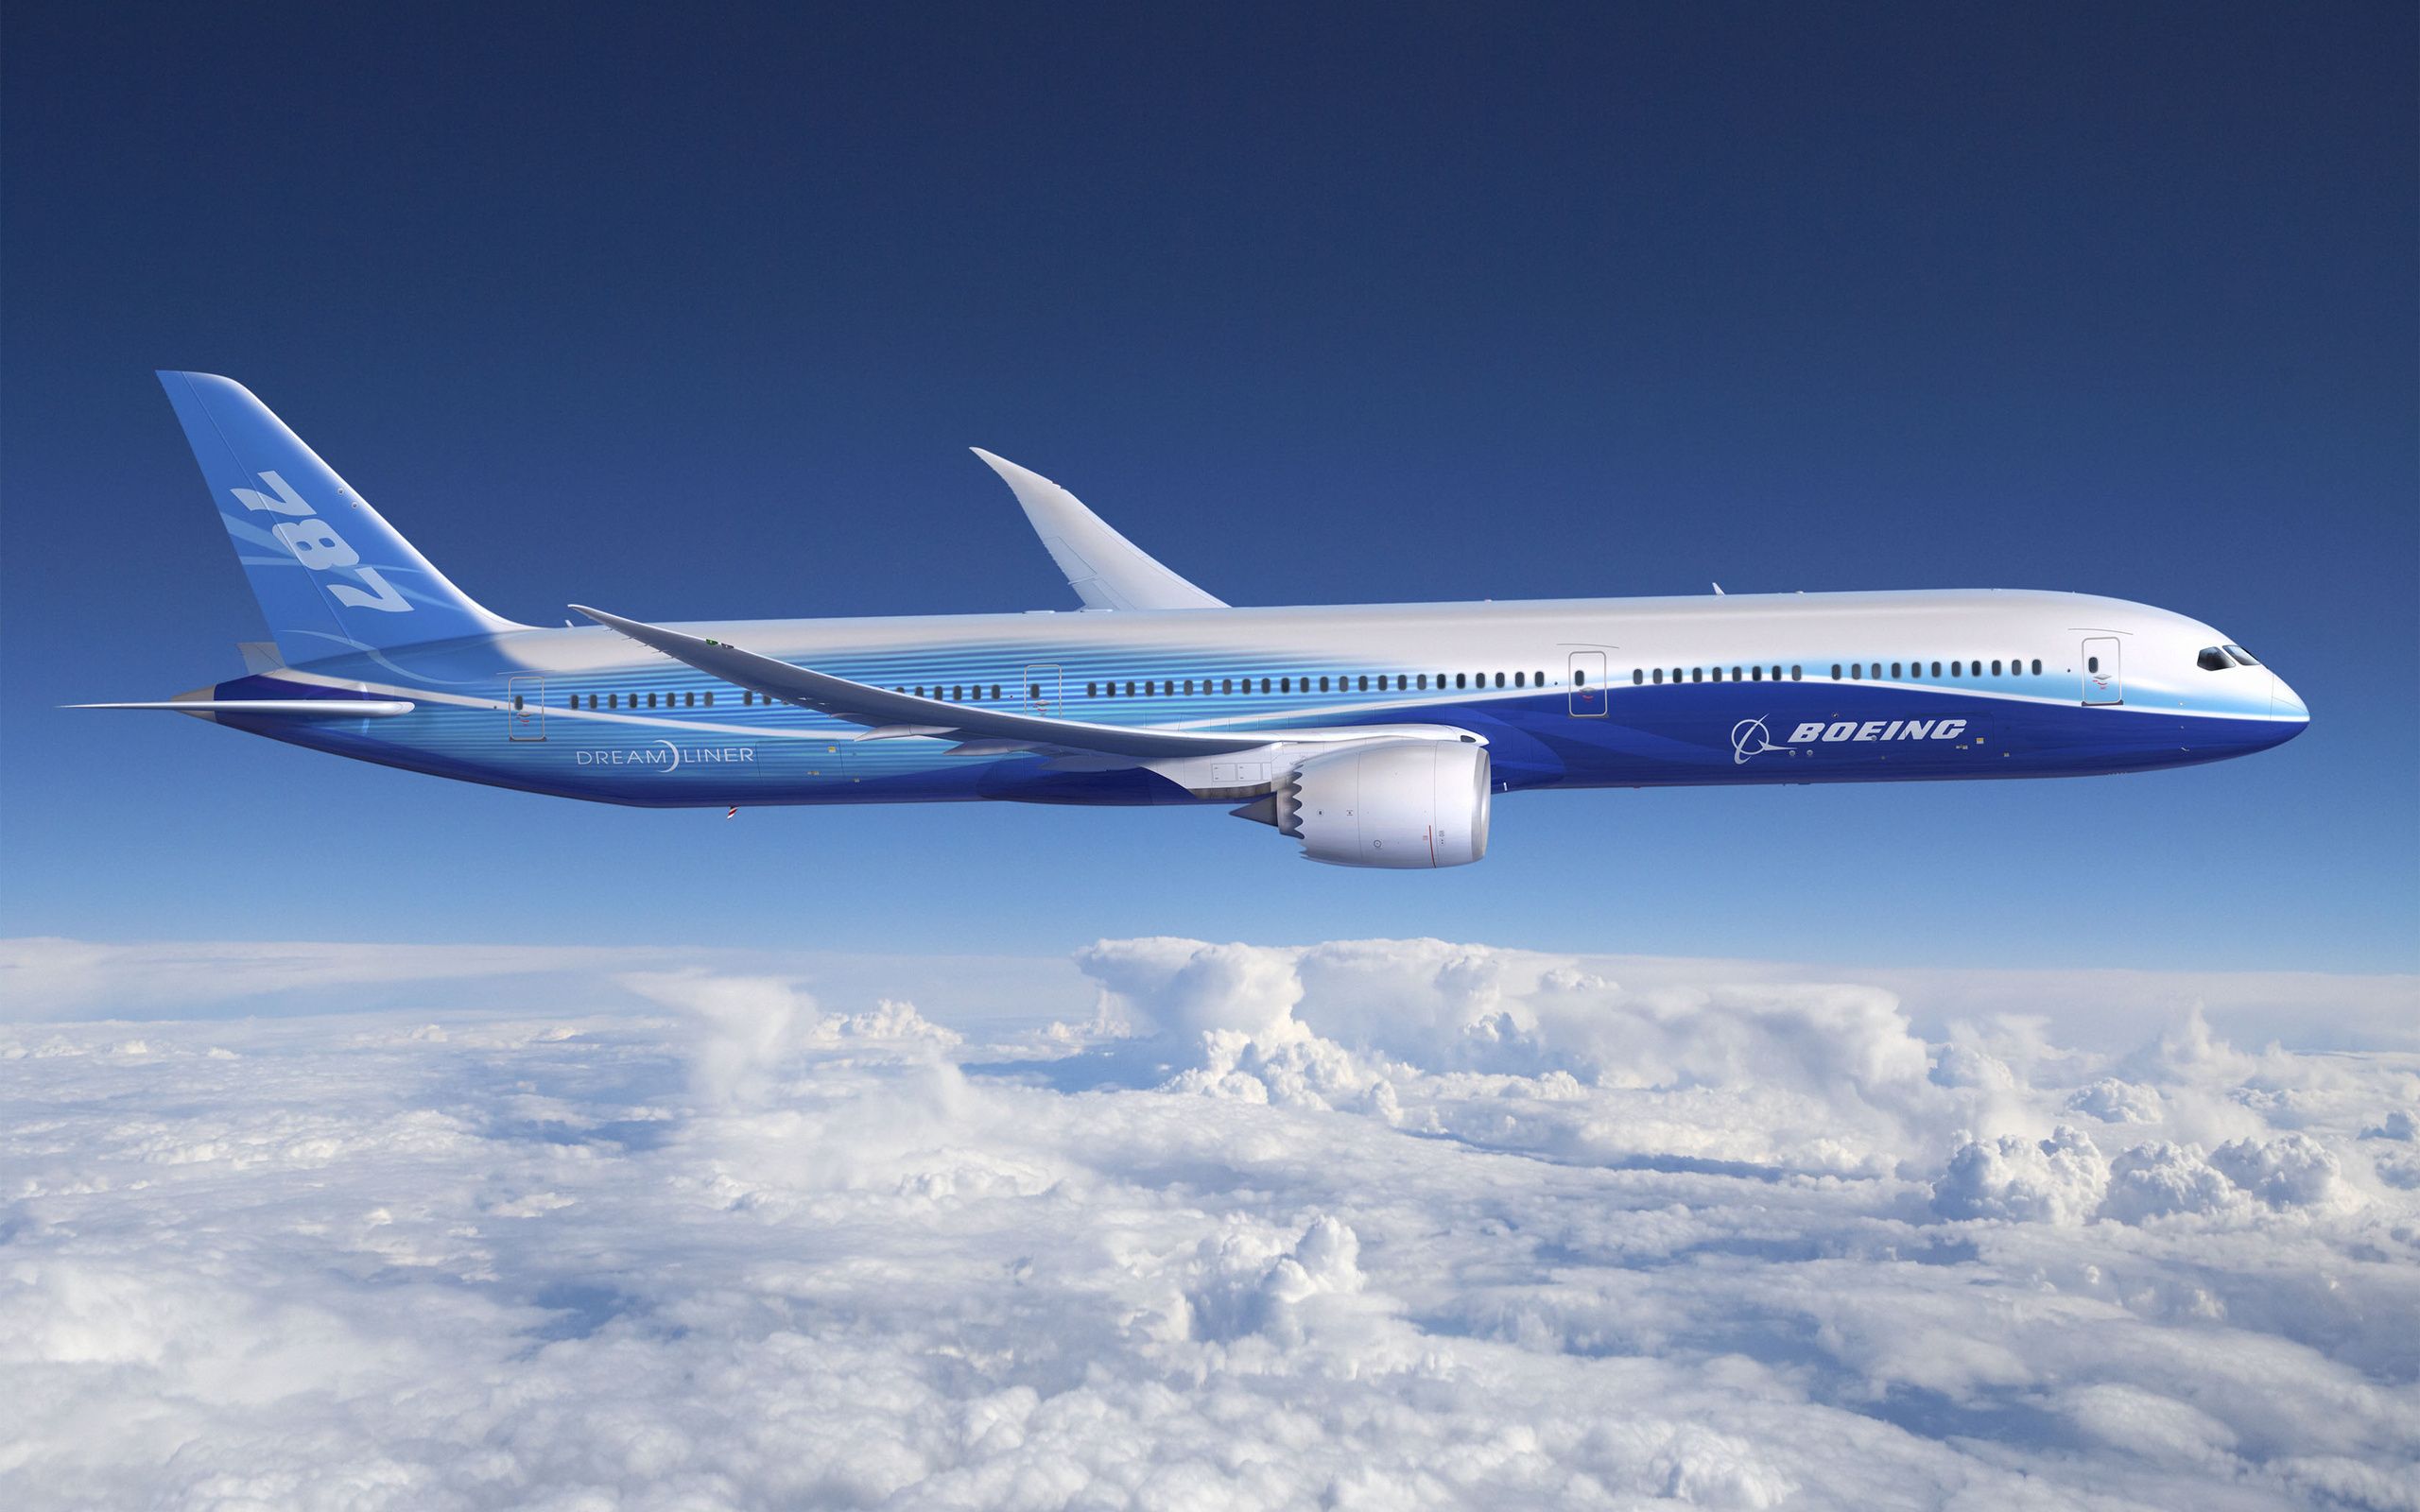  Boeing Hintergrundbild 2560x1600. Download Boeing Airplane Vehicle Boeing 787 Dreamliner HD Wallpaper